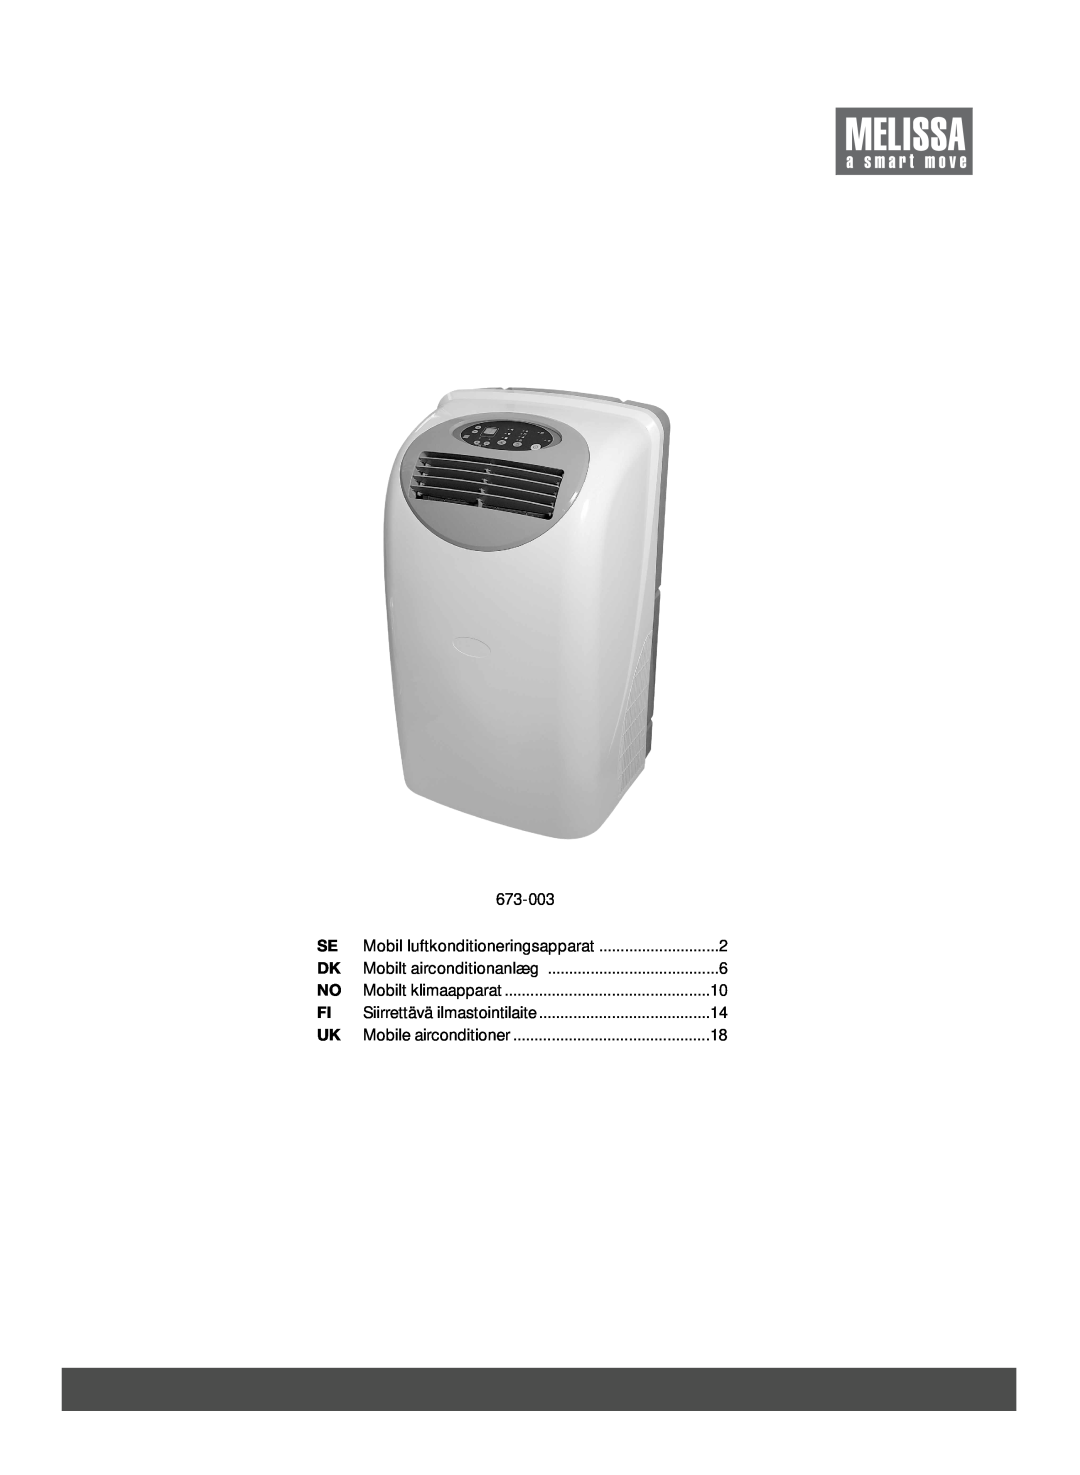 Melissa 673-003 manual Mobil luftkonditioneringsapparat, Mobilt airconditionanlæg, Mobilt klimaapparat 